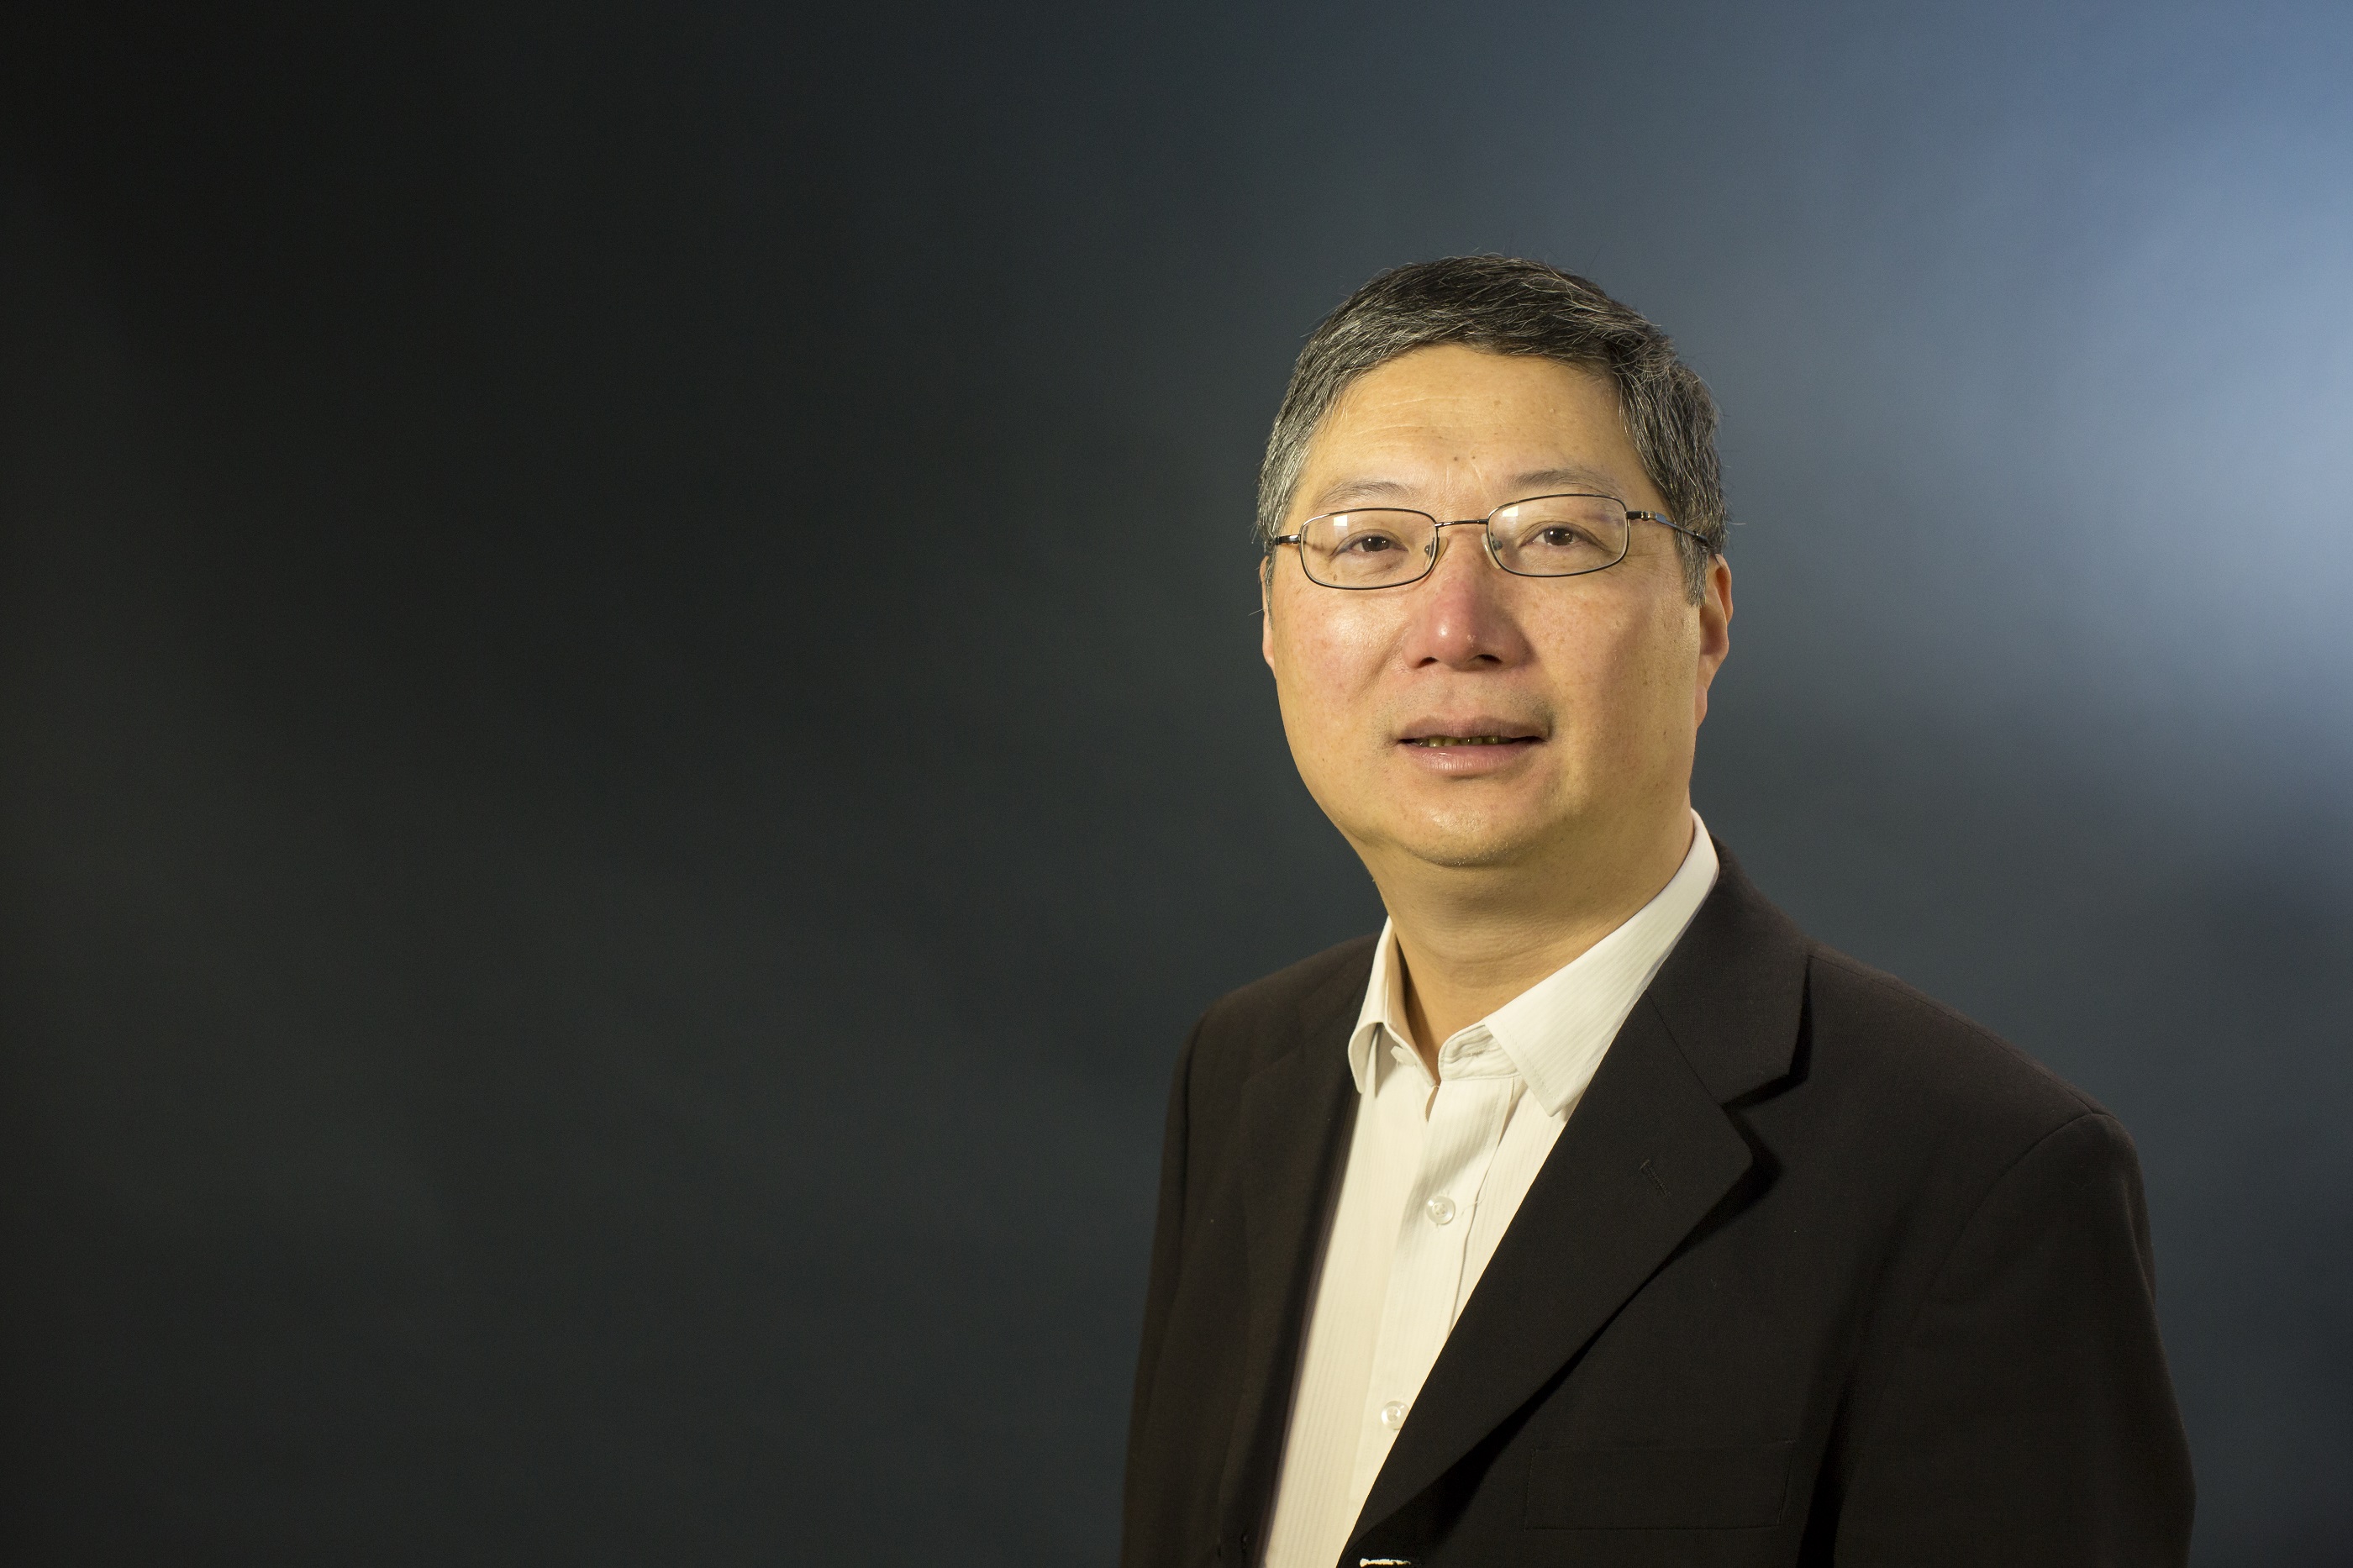 Professor Qiang Shen